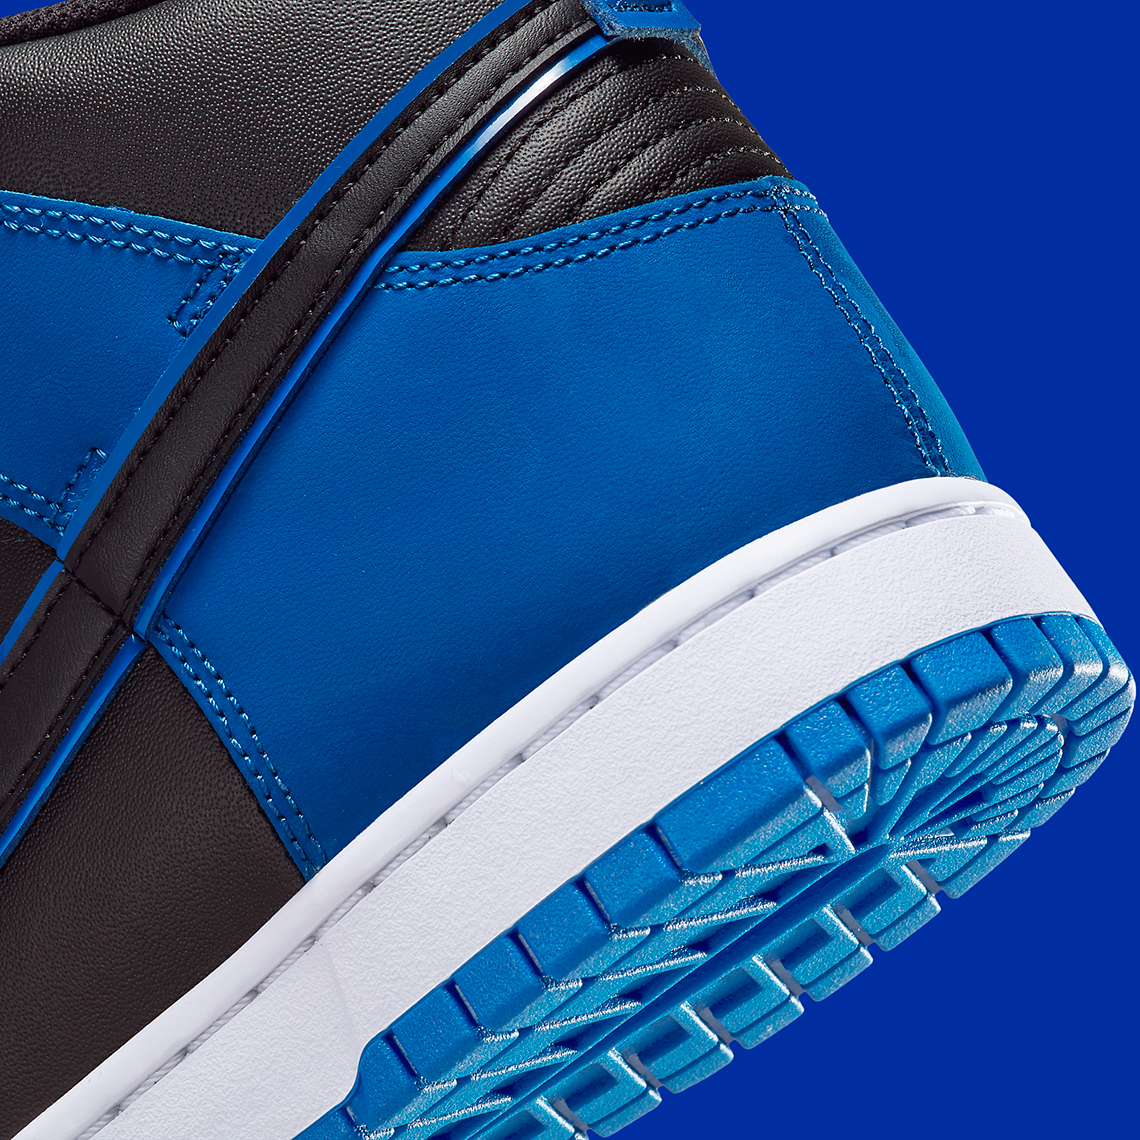 Nike Dunk High Blue Camo Dd3359 001 Release Date 6